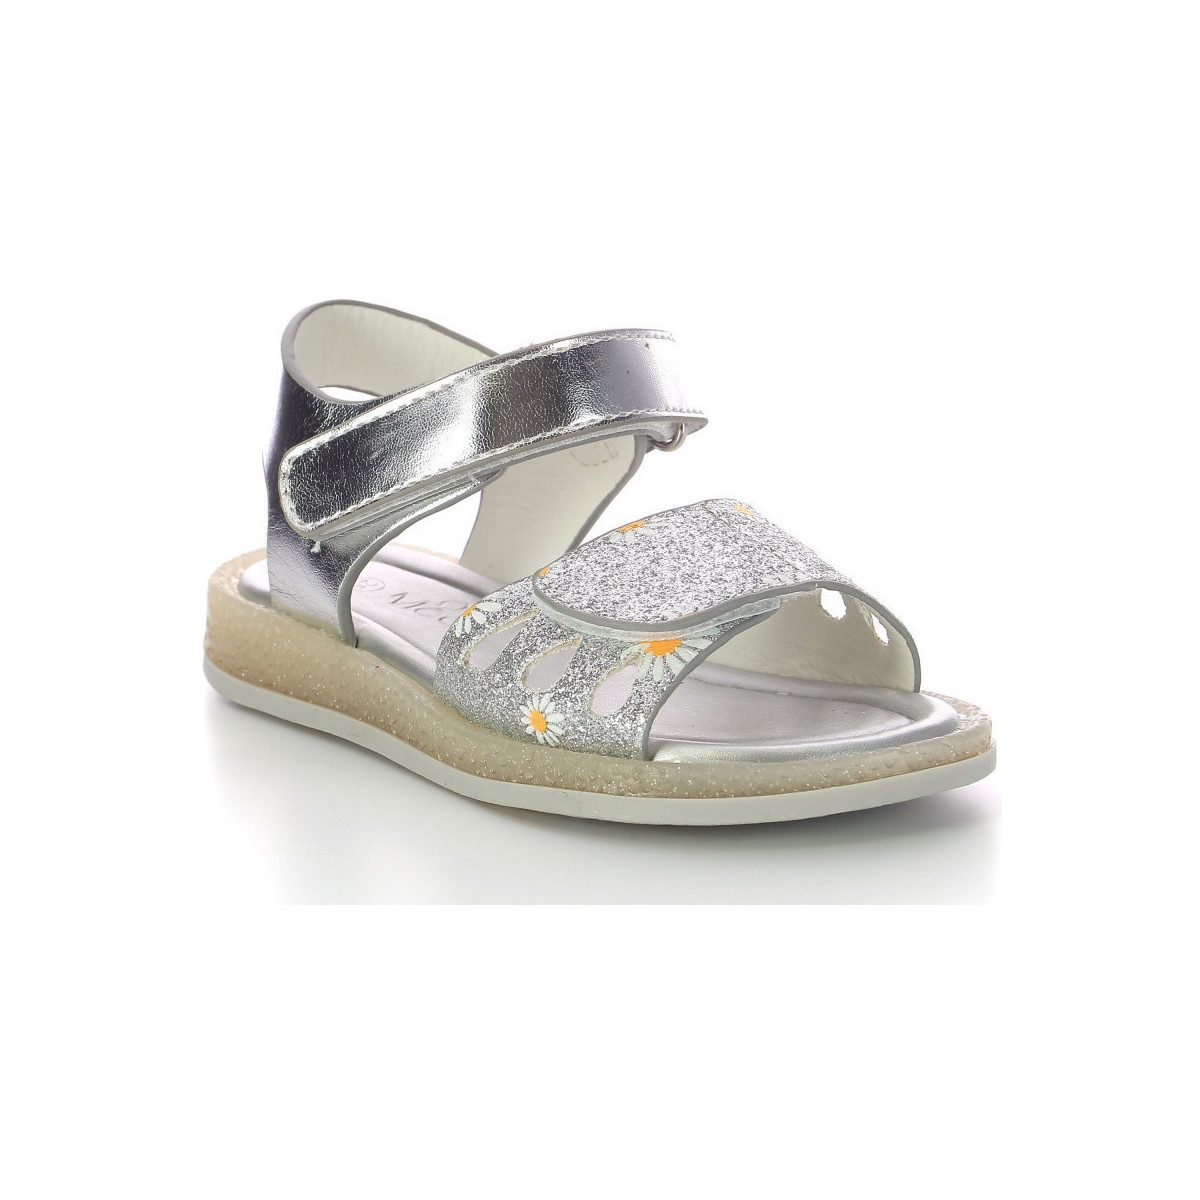 Schuhe Mädchen Sandalen / Sandaletten Mod'8 Liboo Silbern